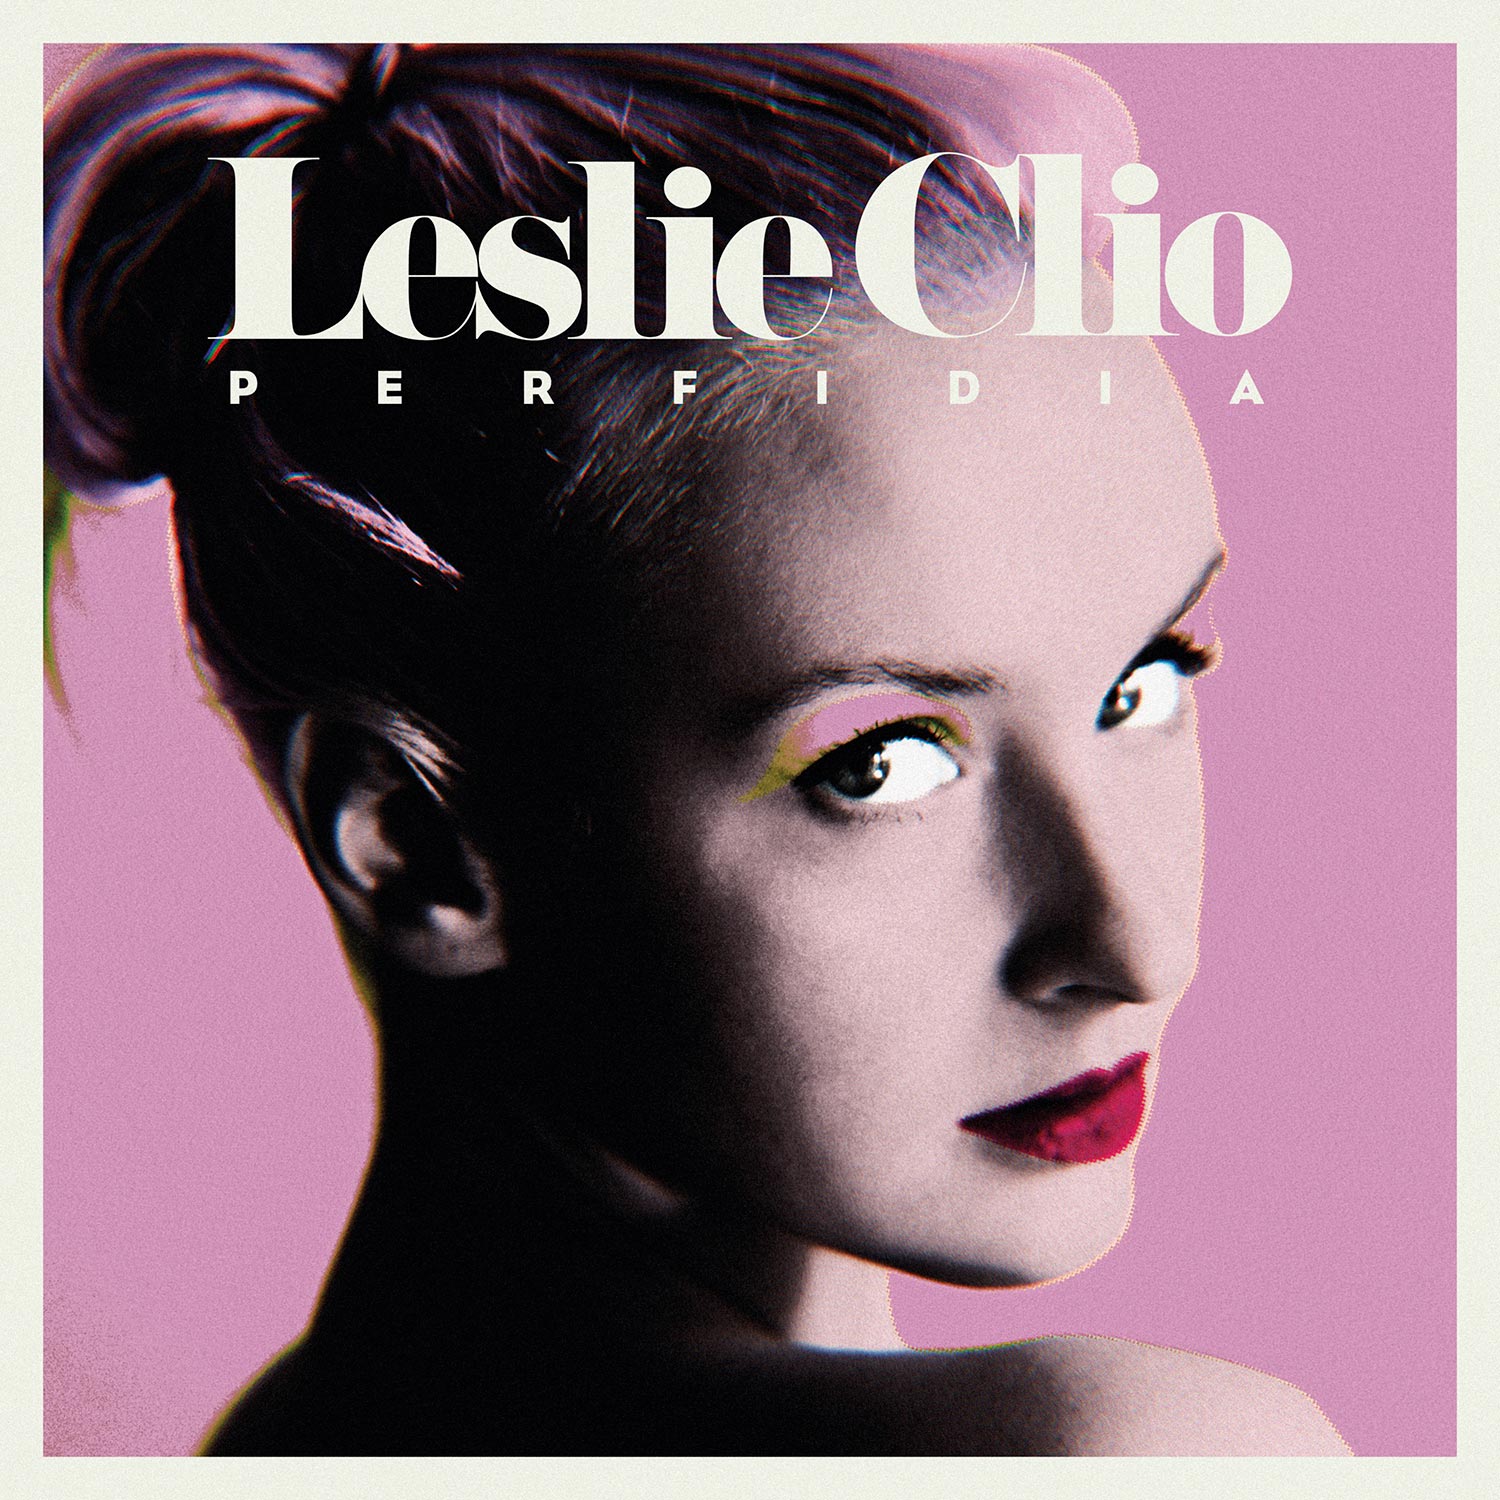 Leslie Clio. Repeat. 4